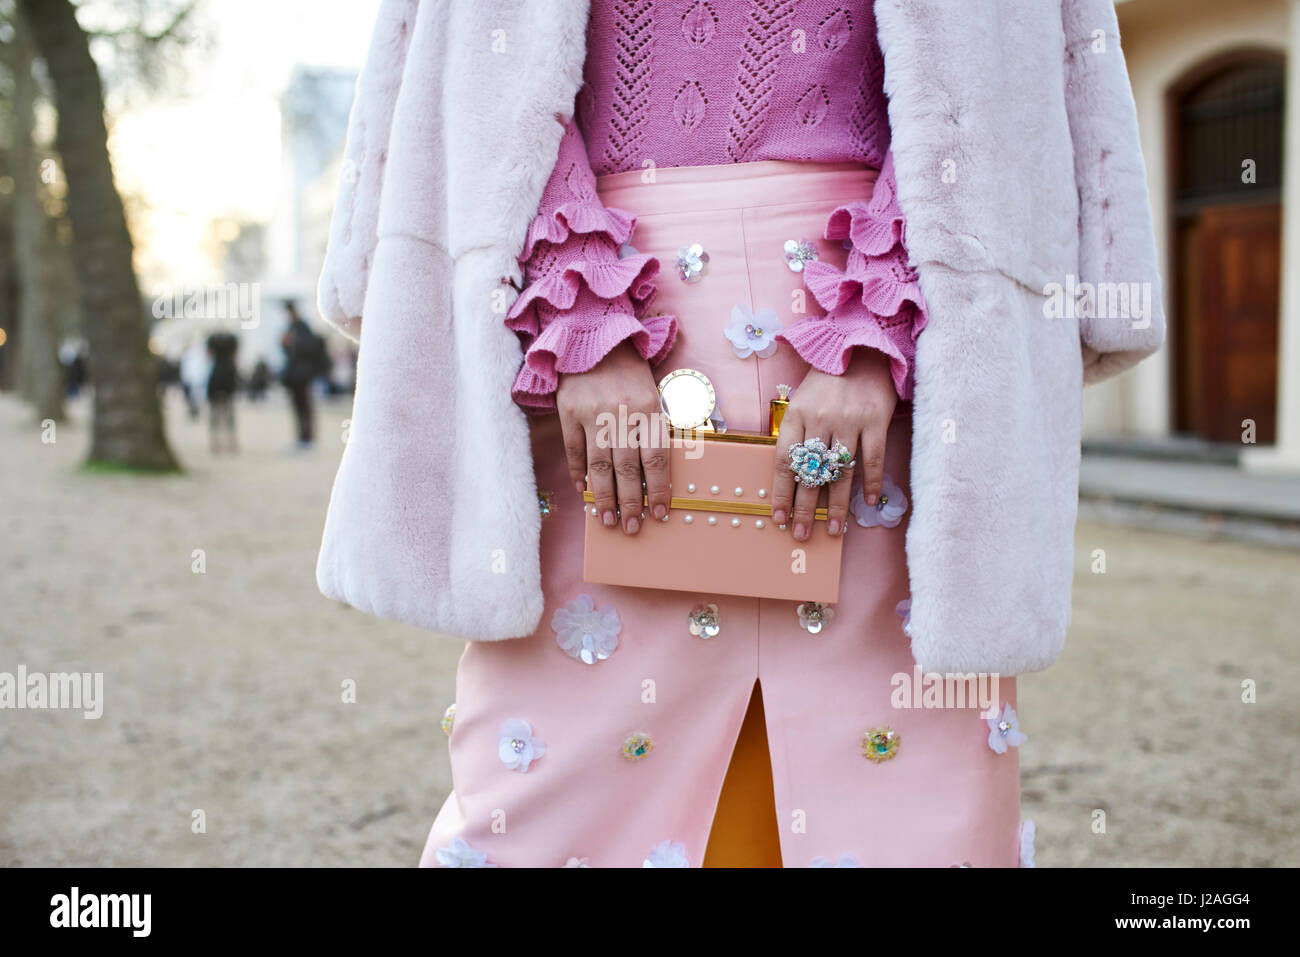 Londra - febbraio, 2017: sezione centrale della donna vestita in sfumature di rosa, con maniche a volant maglione, un cappotto sulle spalle e un mantello con appliqué, tenendo un portamonete decorate in strada durante la London Fashion Week, orizzontale, vista frontale Foto Stock